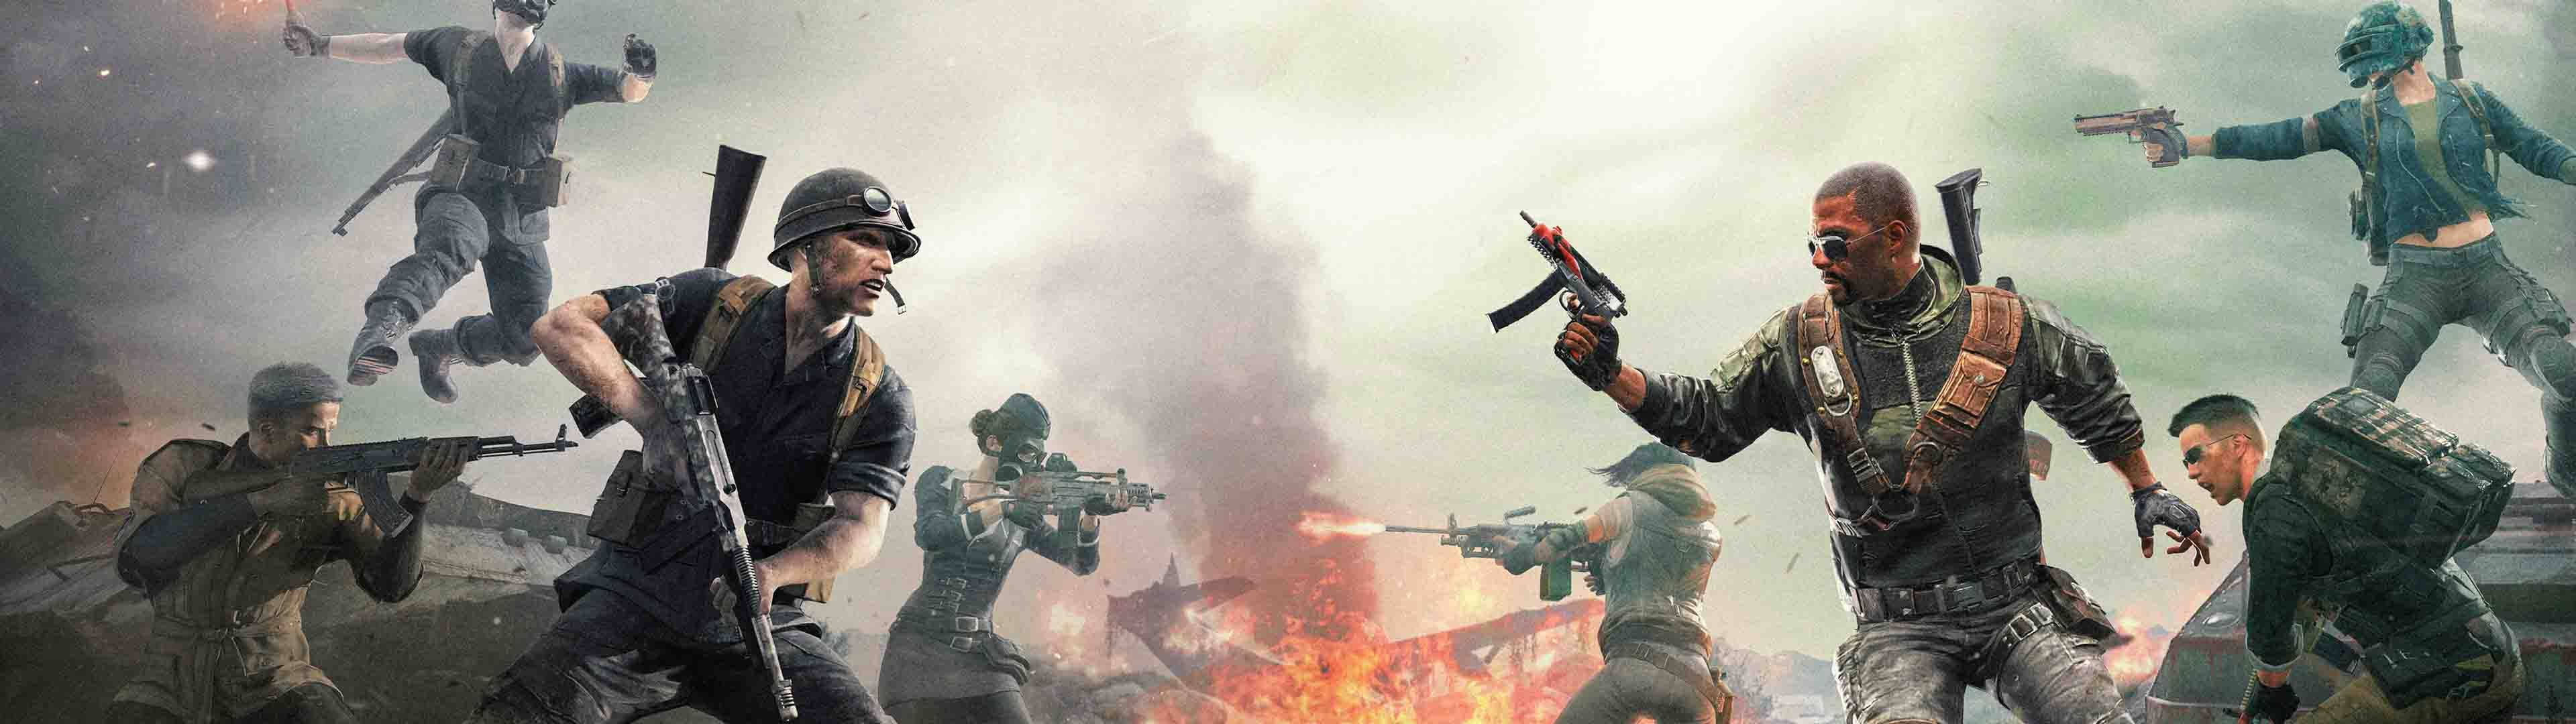 Callof Duty Gaming Dual Screen - Doppio Schermo Di Gioco Call Of Duty. Sfondo